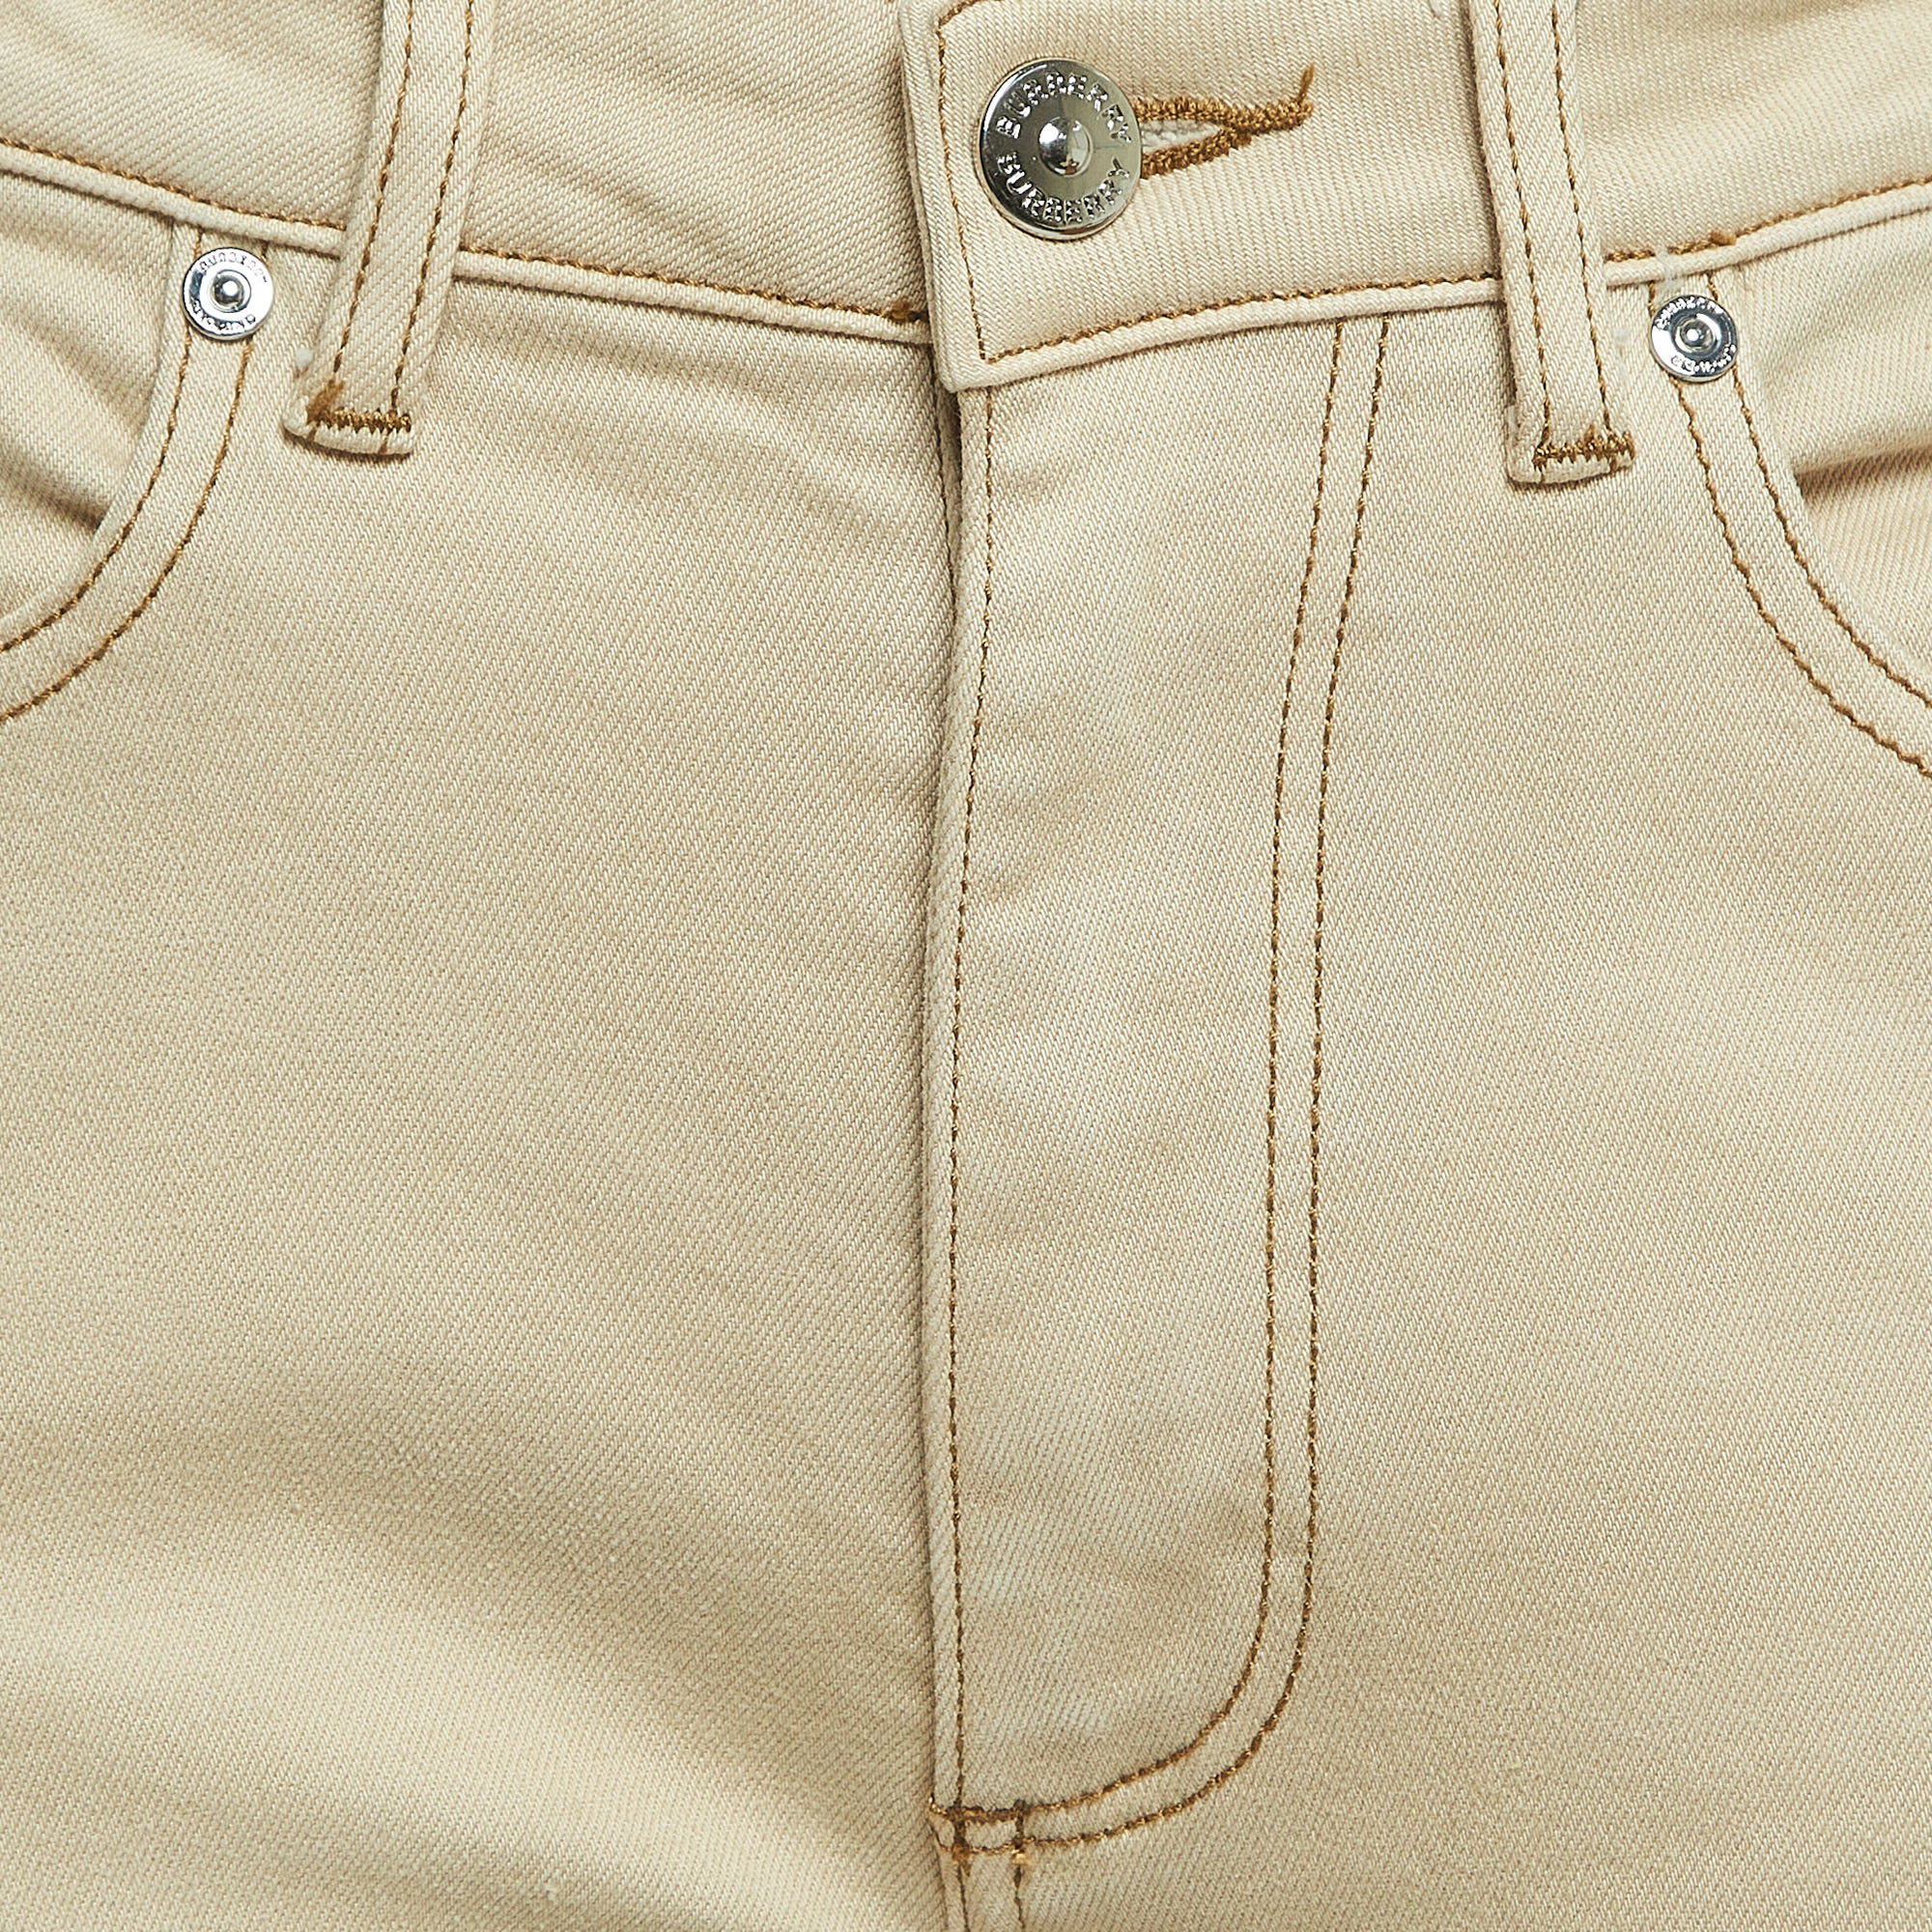 Burberry Beige Denim Pocket Detail Skinny Jeans S Waist 27